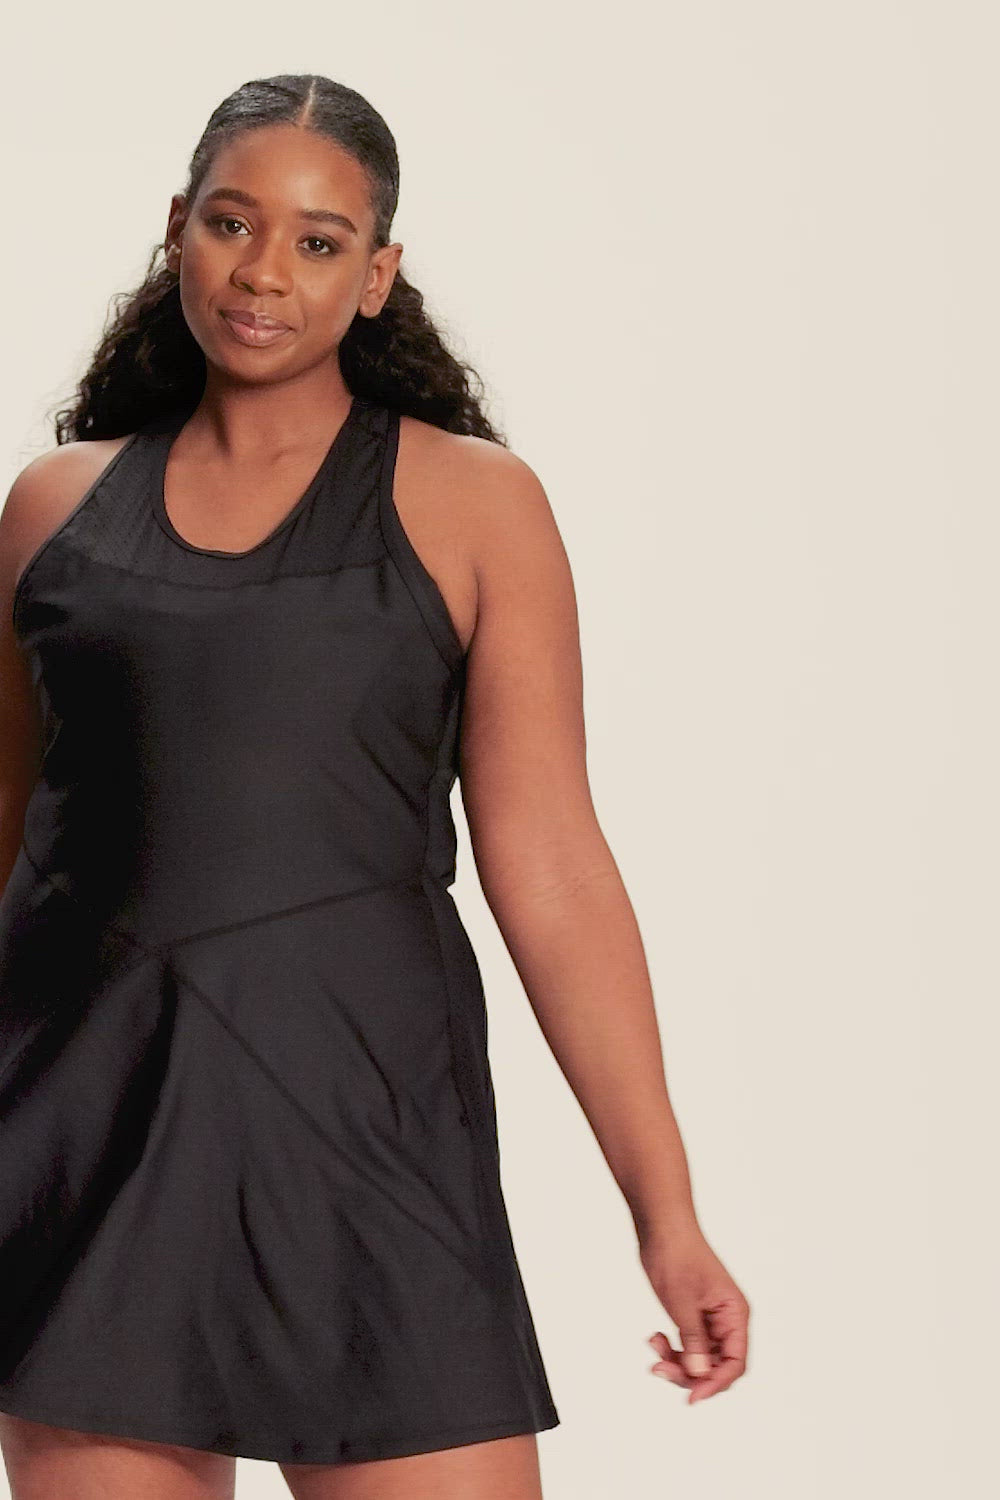 Alala women's tennis dress in black